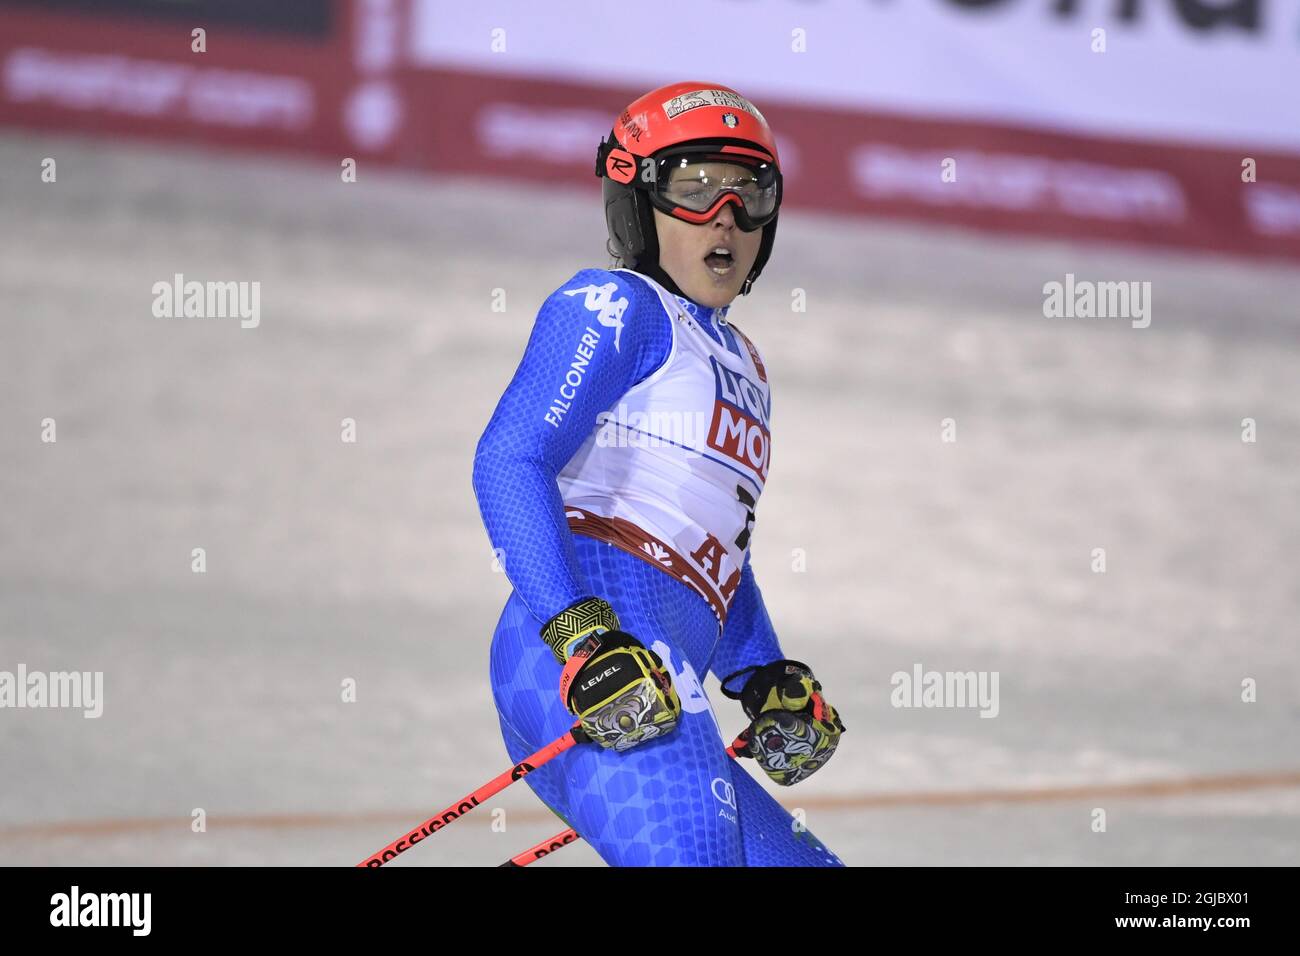 Die italienische´s Federica Brignone platzierte sich am 14. Februar 2019 im Riesenslalom der Frauen bei den FIS Alpinen Ski-Weltmeisterschaften in Are, Schweden, auf Platz fünf. Foto: Pontus Lundahl / TT Stockfoto